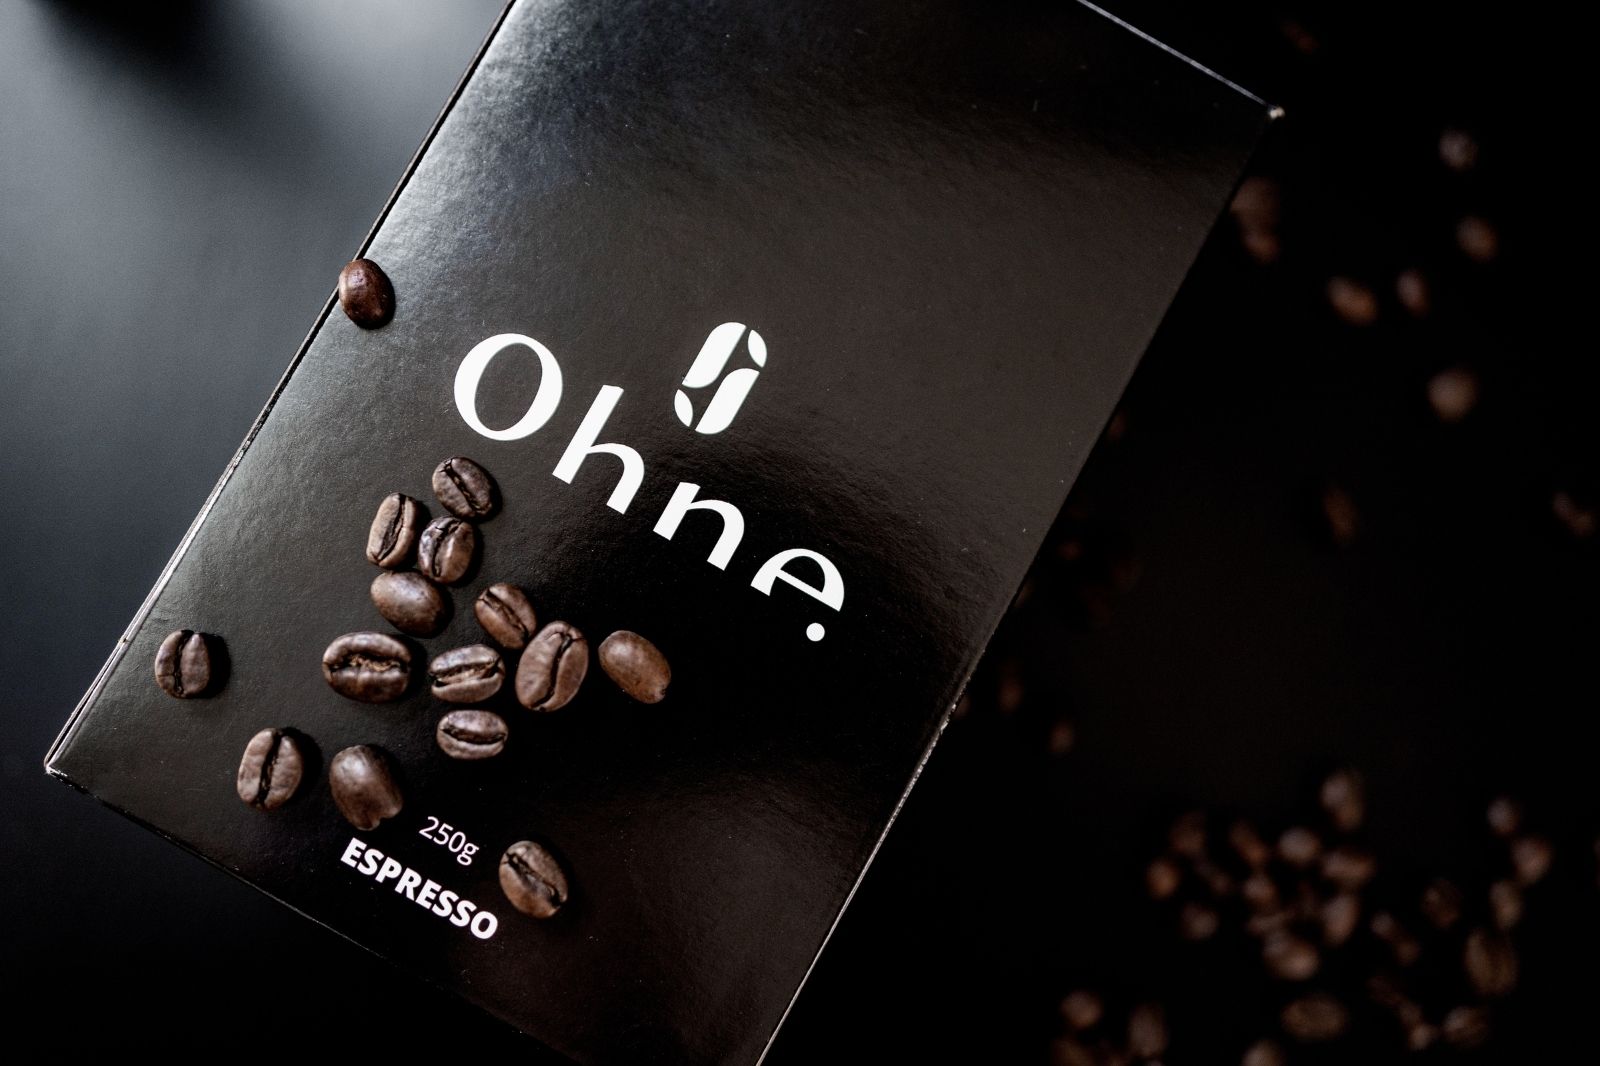 Entkoffeiniert Kaffee von OHNE zur Verbesserung der eigenen Leistungsfähigkeit